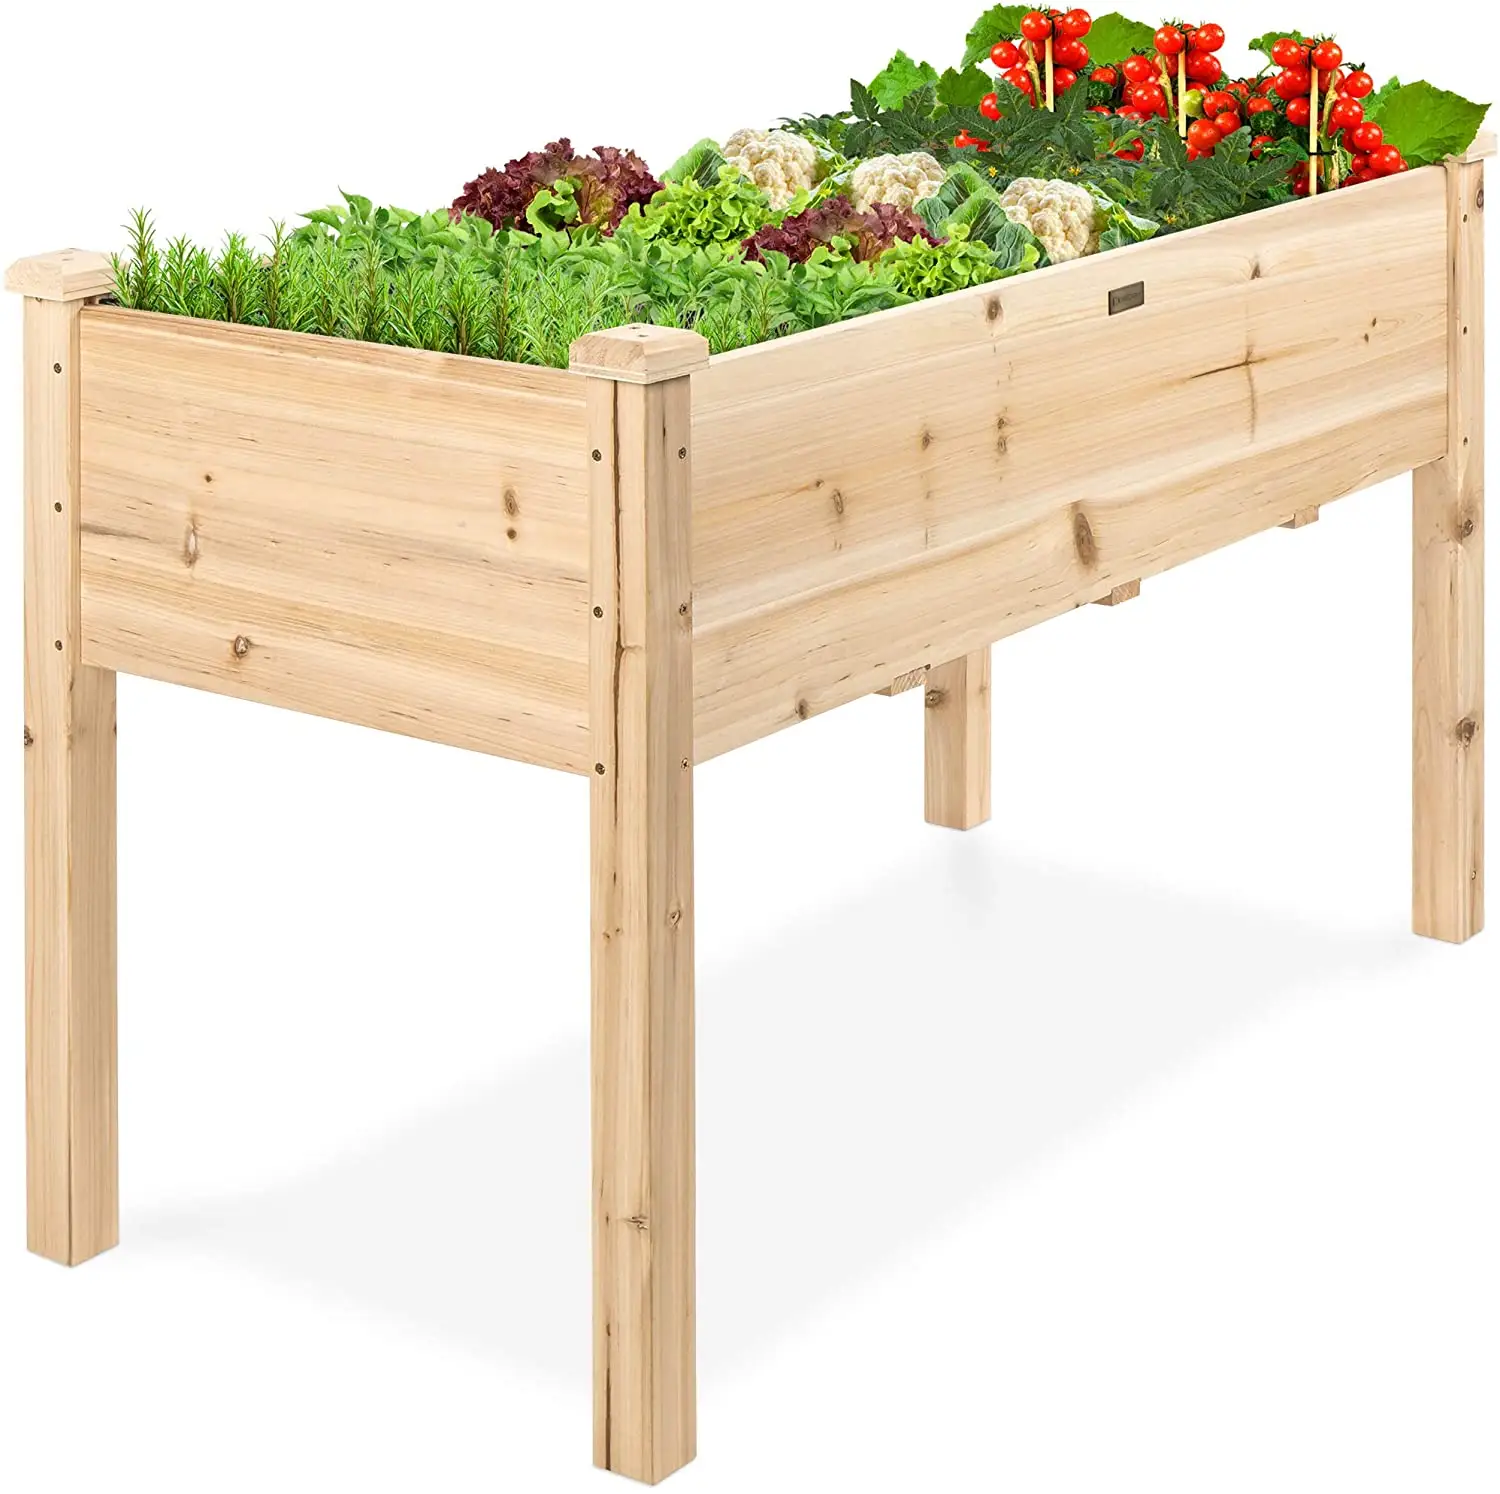 Erhöhten Holz Pflanzer Box Stehen für Hinterhof Terrasse Angehoben Garten Bett